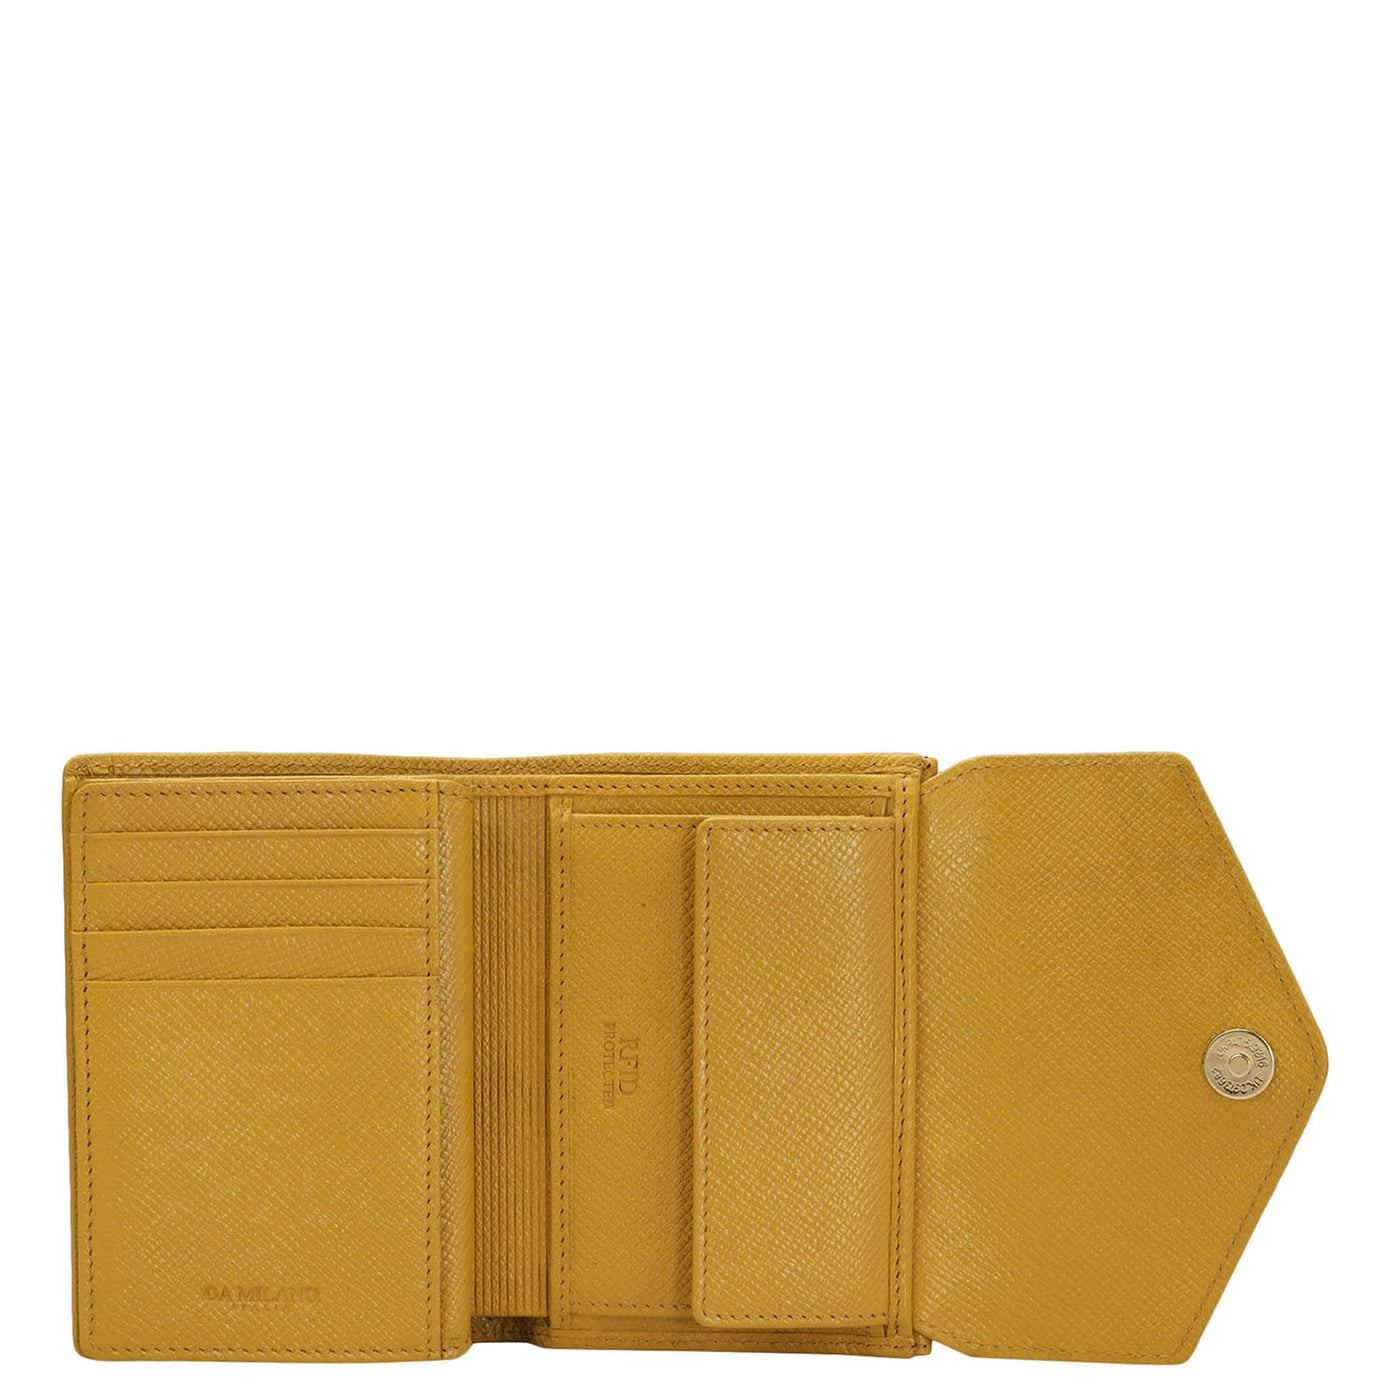 Monogram Leather Ladies Wallet - Mustard